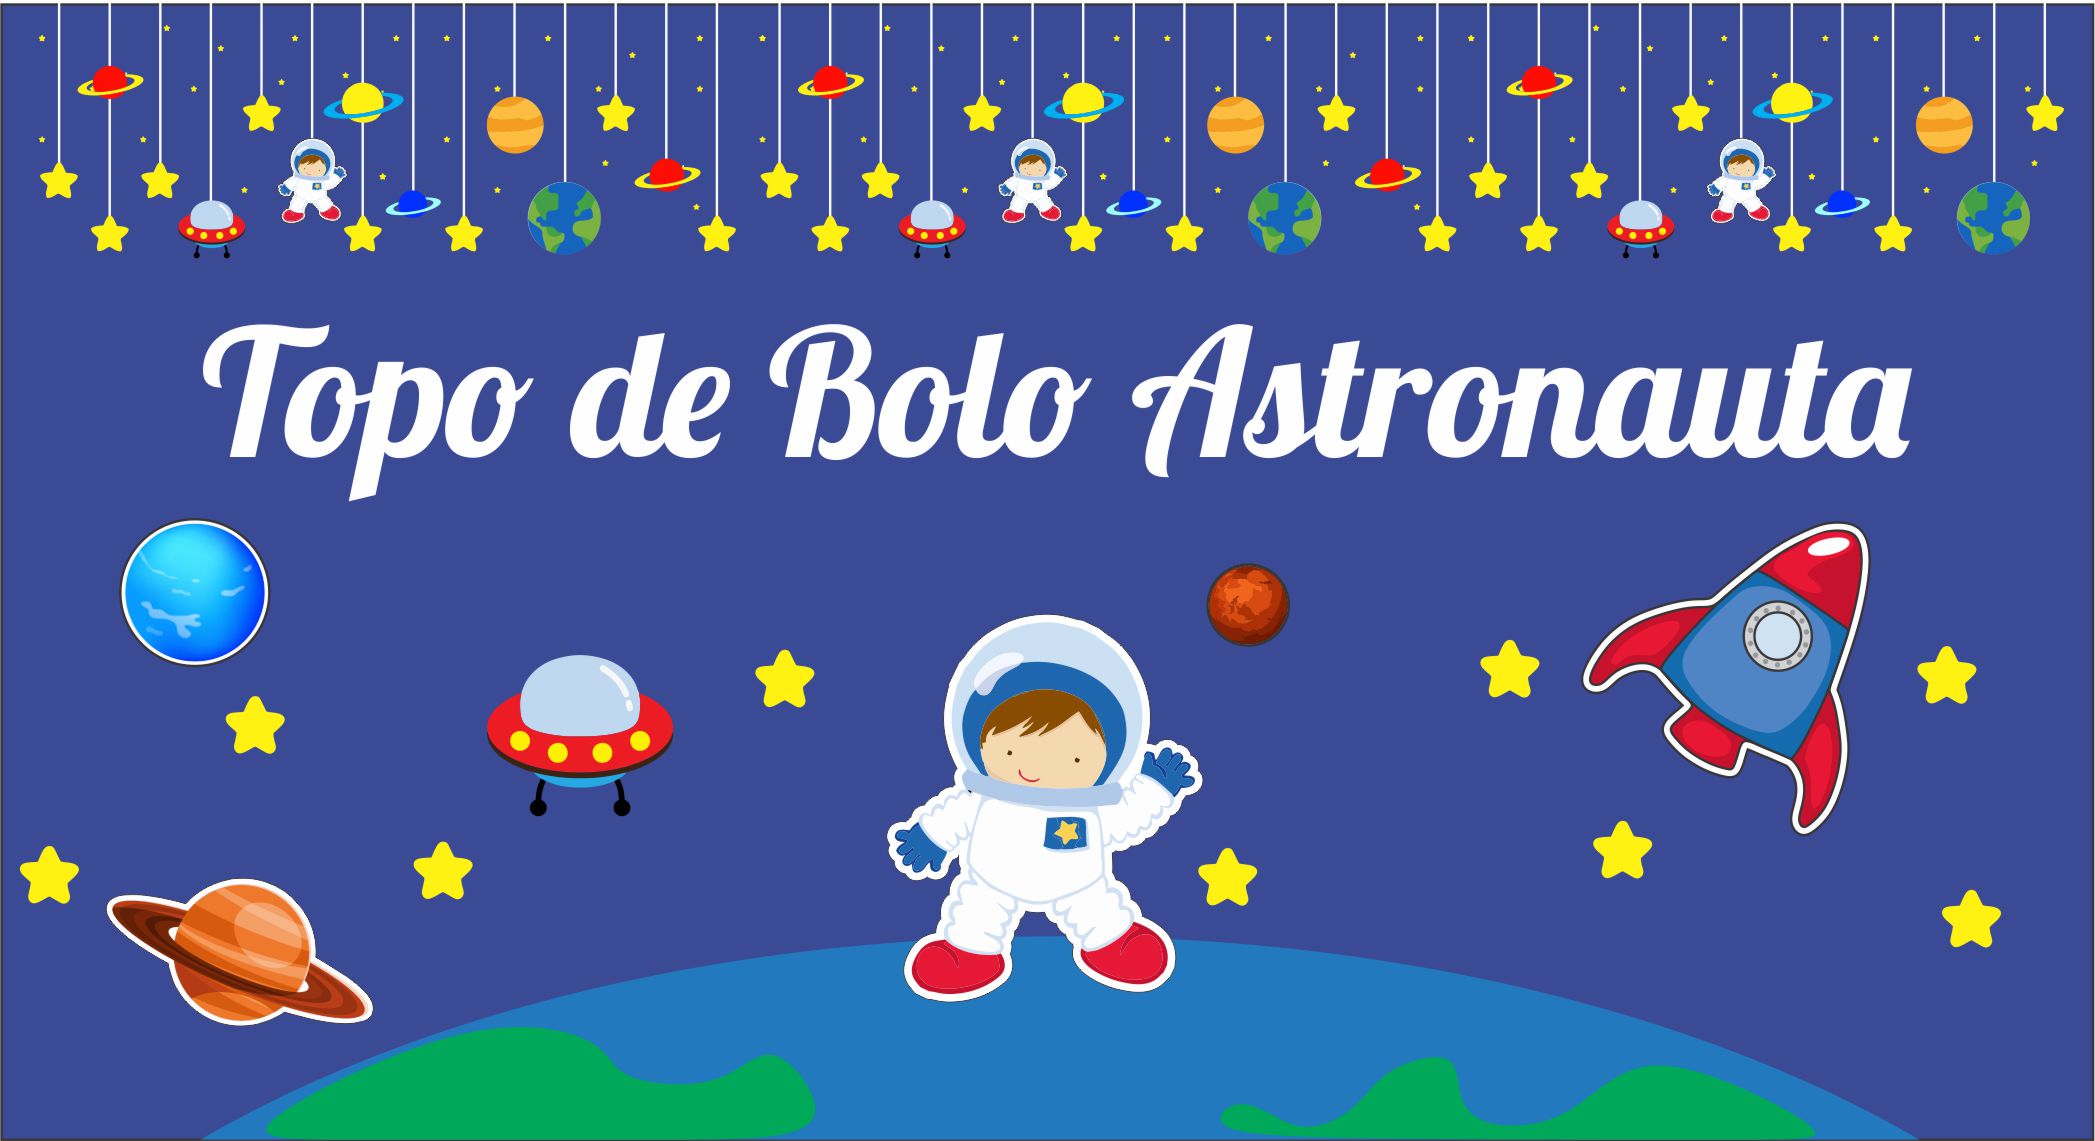 CAPA ASTRONAUTA - Topo de Bolo Astronauta Para imprimir em Alta Qualidade, Grátis.